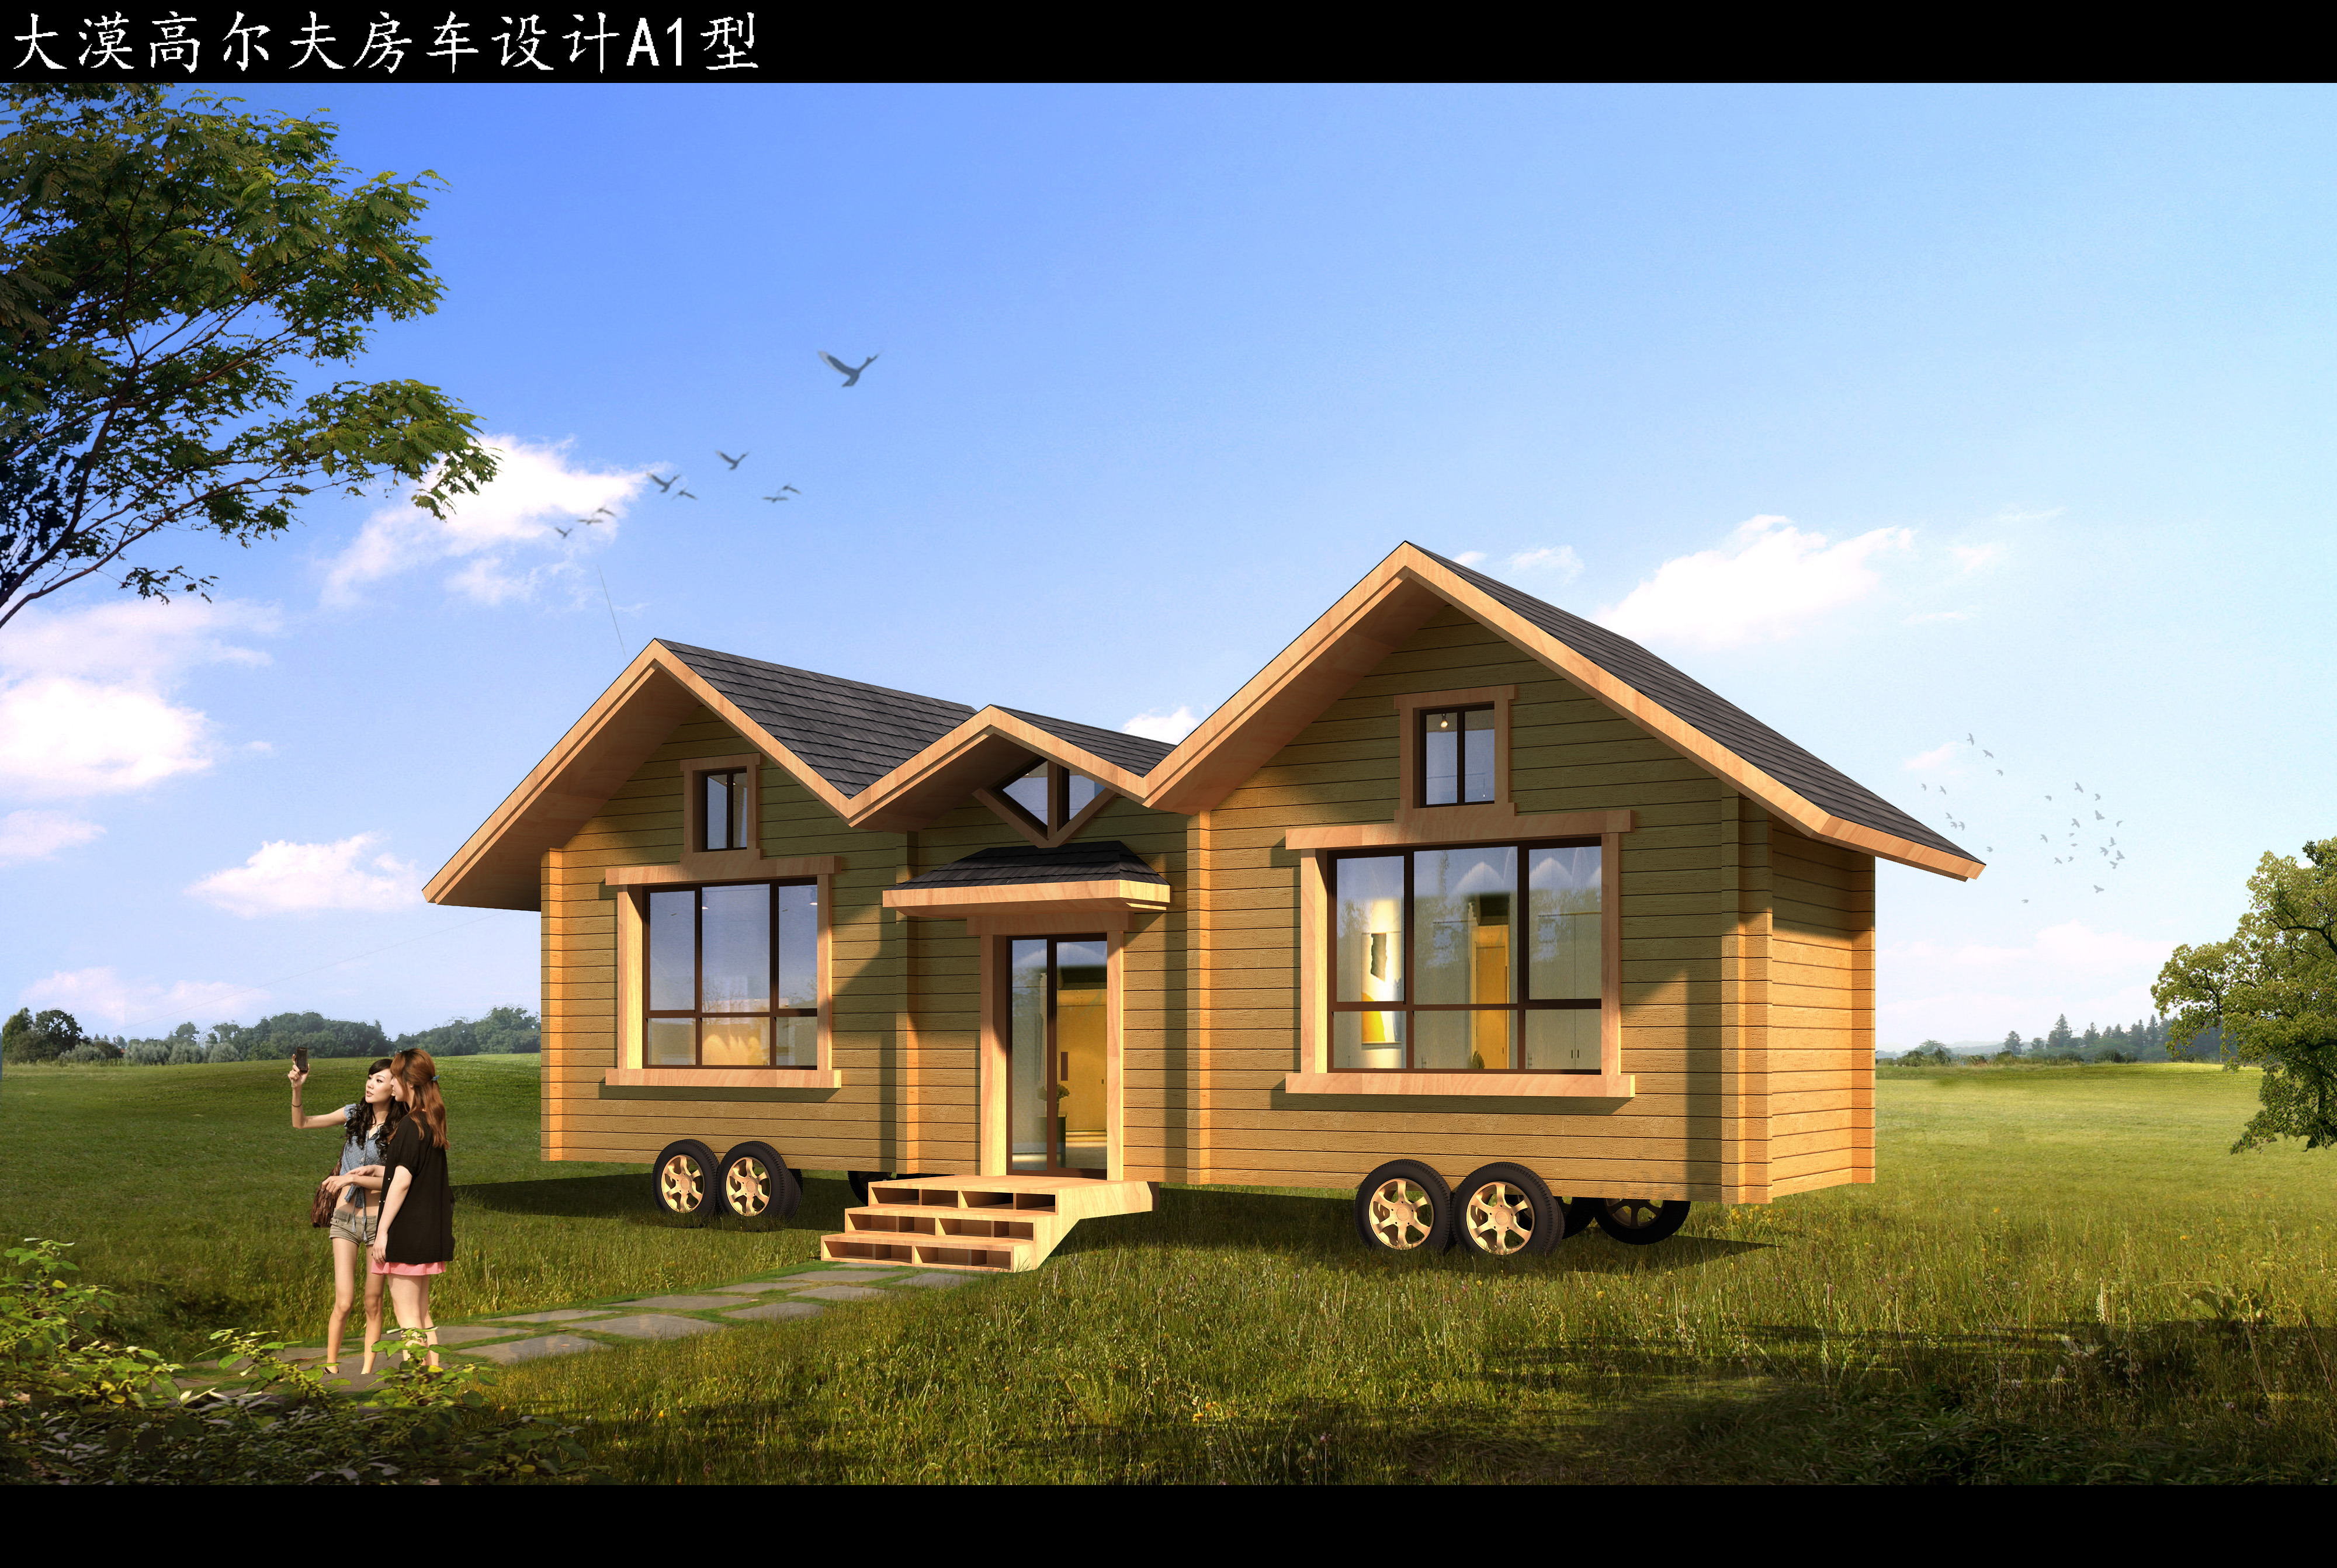 重型木结构房屋和轻型木屋各有什么优点呢